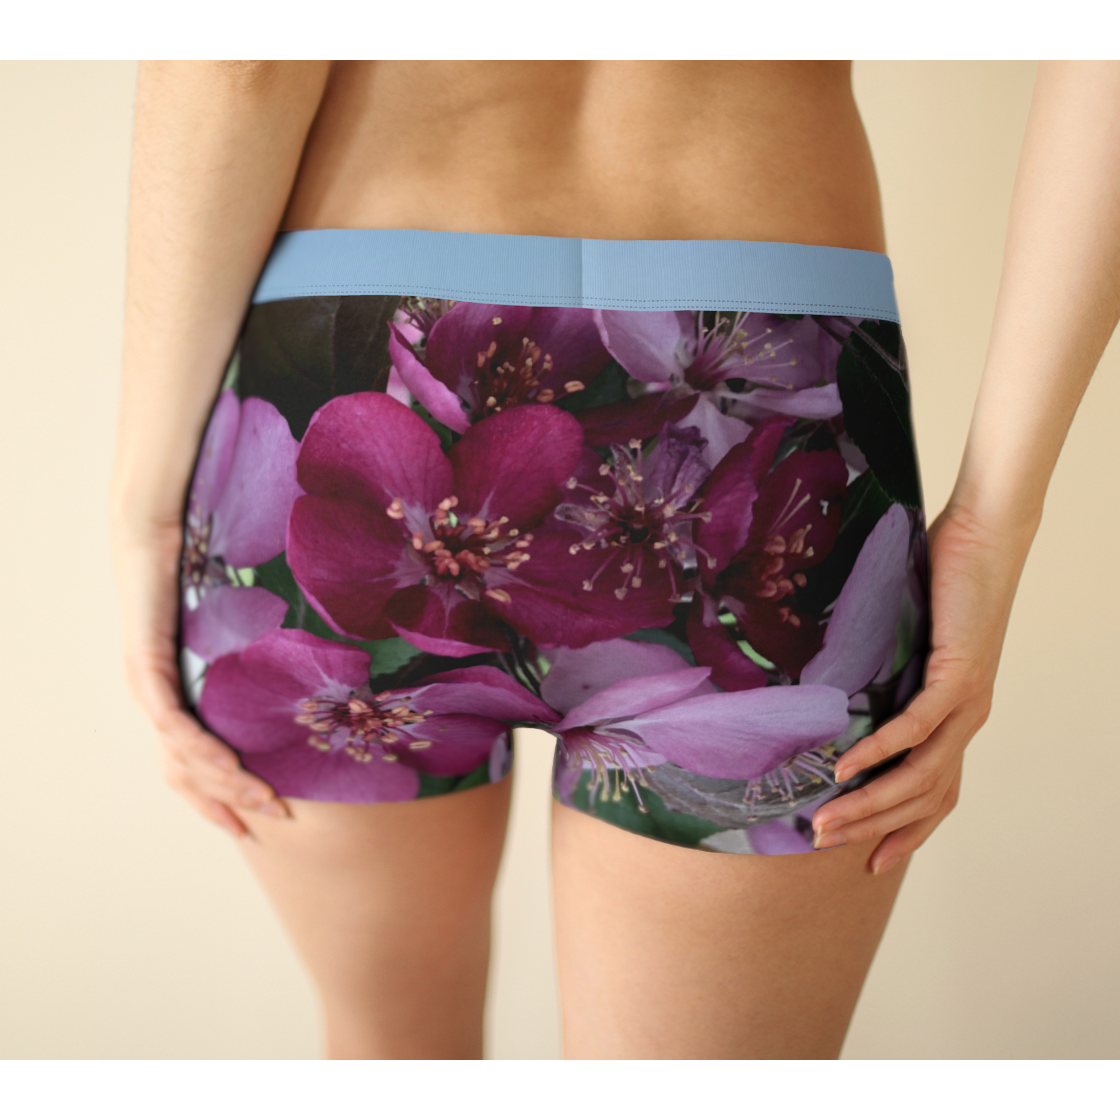 Boy Shorts, Women's Underwear, Flower Petal, Light Band, Back